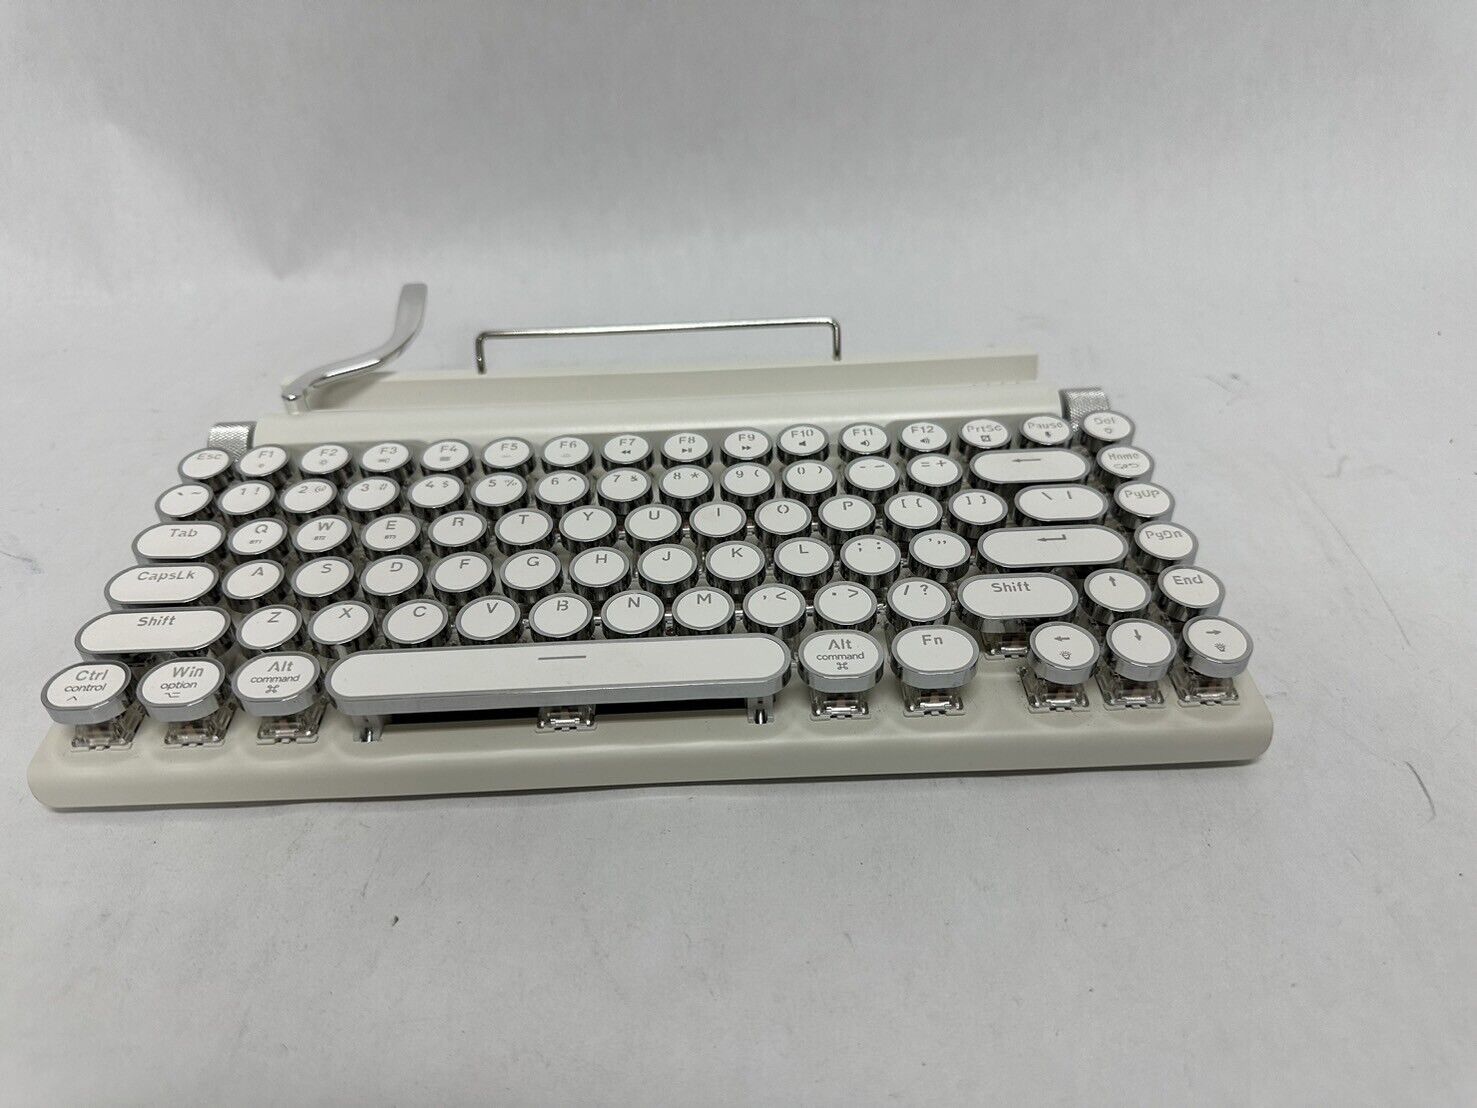 Taiahiro Retro Typewriter Keyboard Wireless Mechanical Vintage Keyboard 83-Key